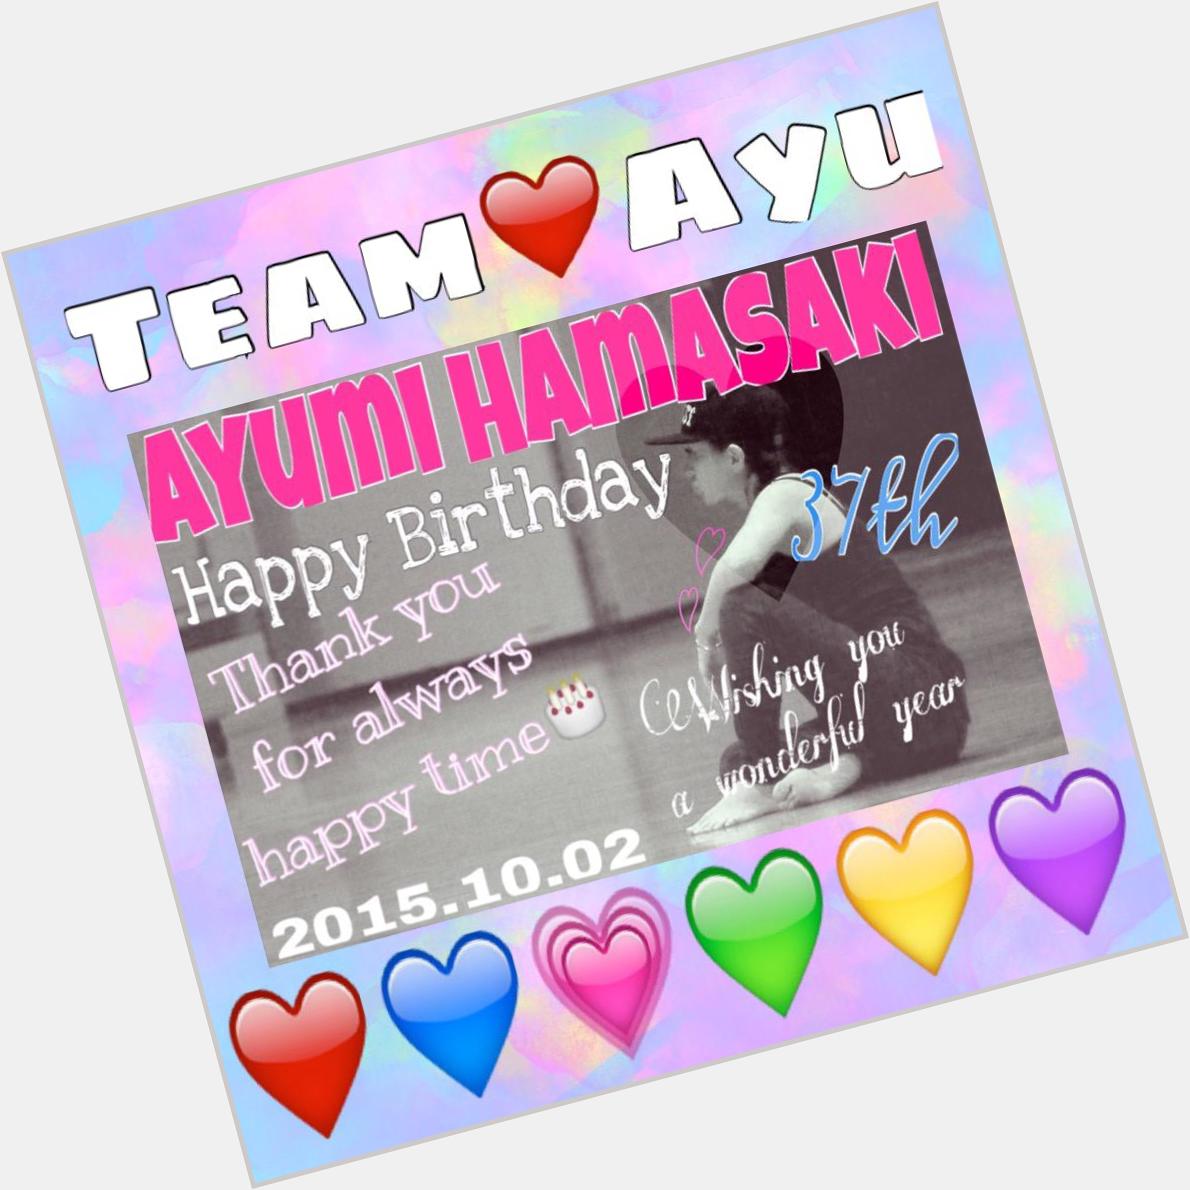  Ayumi Hamasaki
Happy Birthday                      (   )             1            2015.10.02 